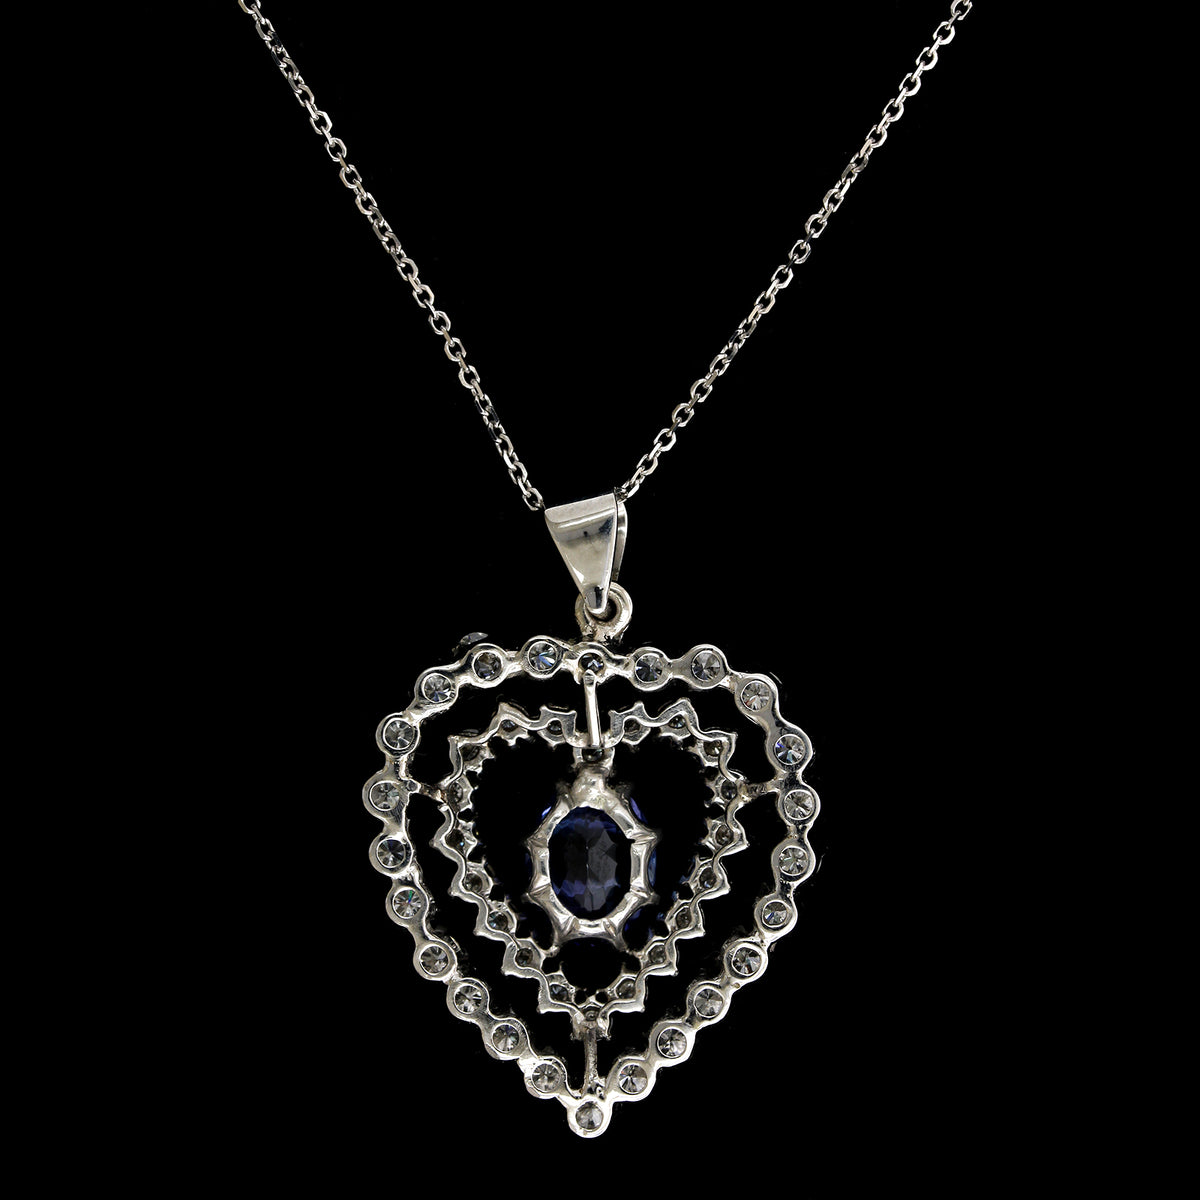 14K White Gold Estate Tanzanite and Diamond Heart Pendant Necklace